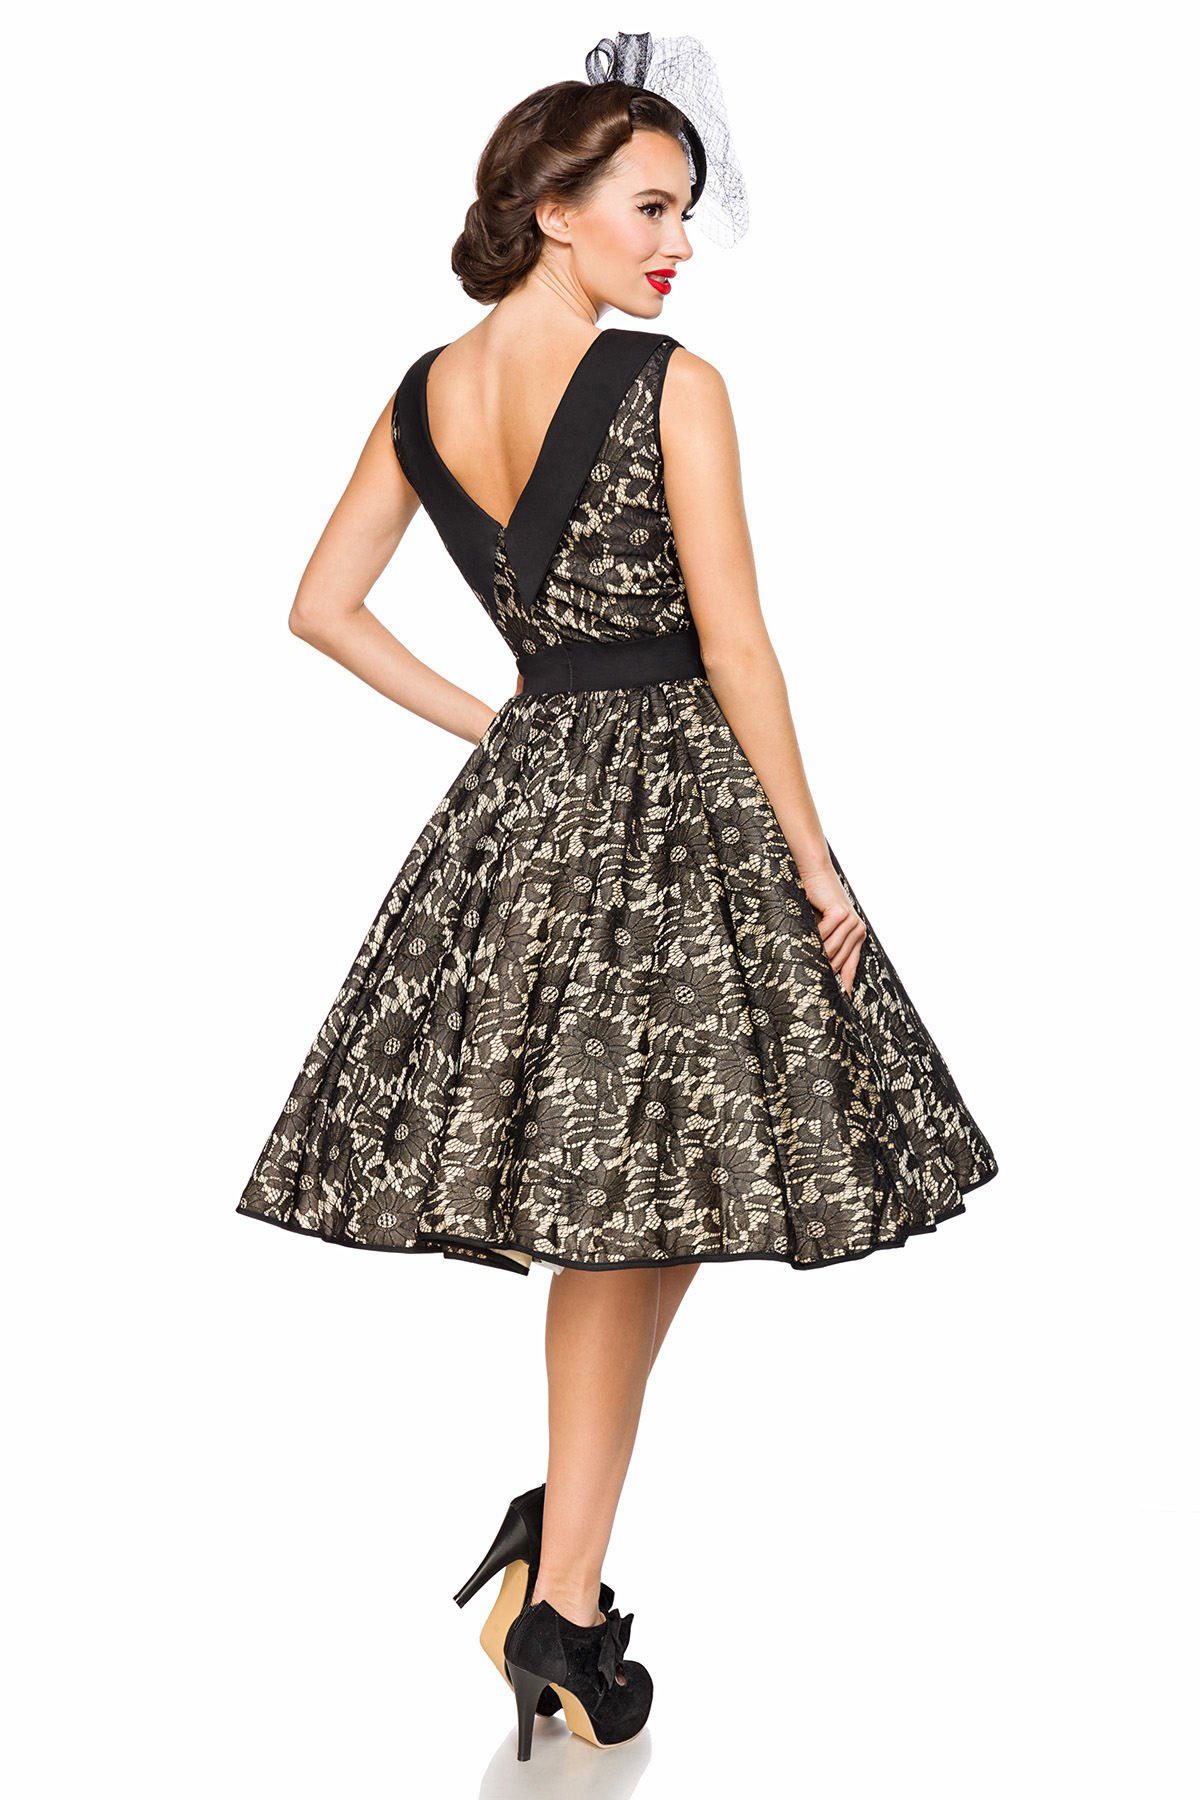 BELSIRA Kleid Jahre Vintage-Spitzenkleid Rockabilly Up Pin A-Linien-Kleid 50er Retrokleid